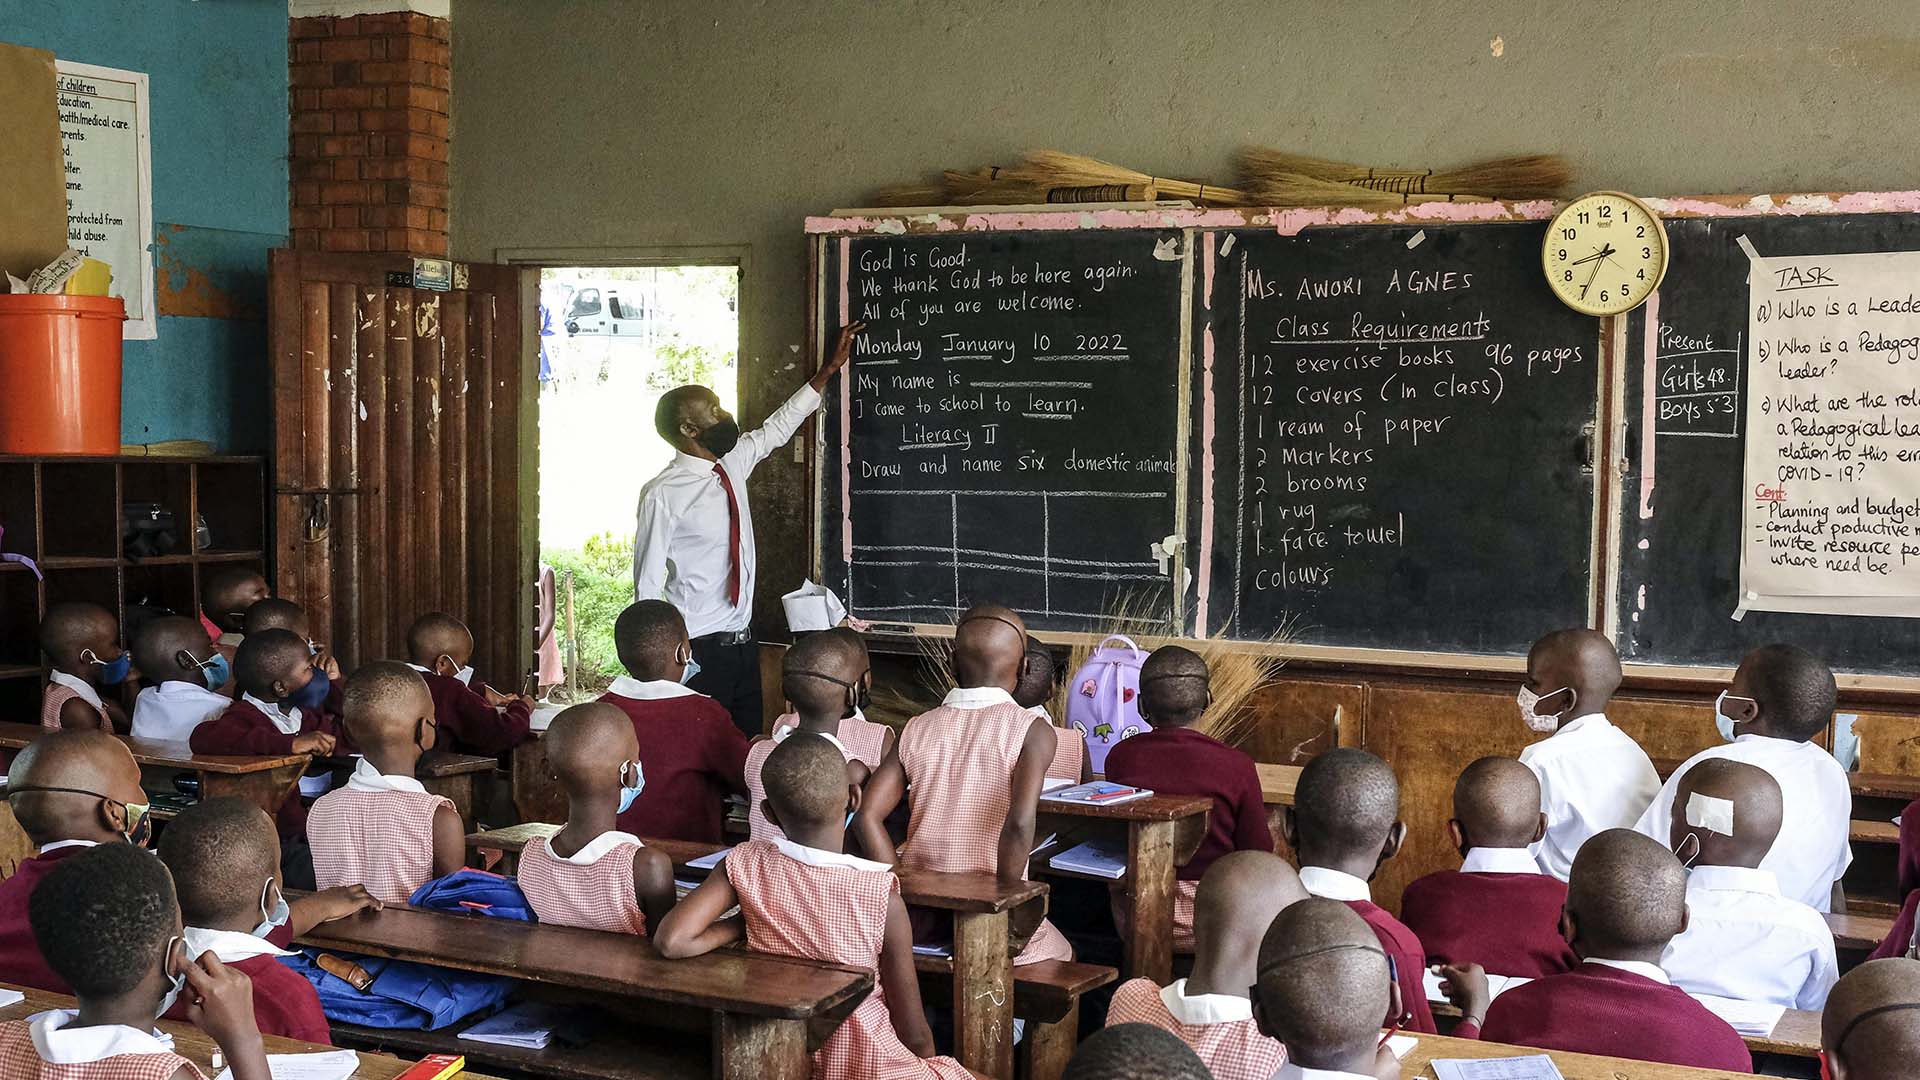 Les élèves portent des masques faciaux lorsqu'ils assistent aux cours de l'école primaire Kitante à Kampala, en Ouganda, le lundi 10 janvier 2022. Les écoles ougandaises ont rouvert aux élèves lundi, mettant fin à la plus longue interruption scolaire au monde en raison de la pandémie de COVID-19. (Photo AP/Hajarah Nalwadda)